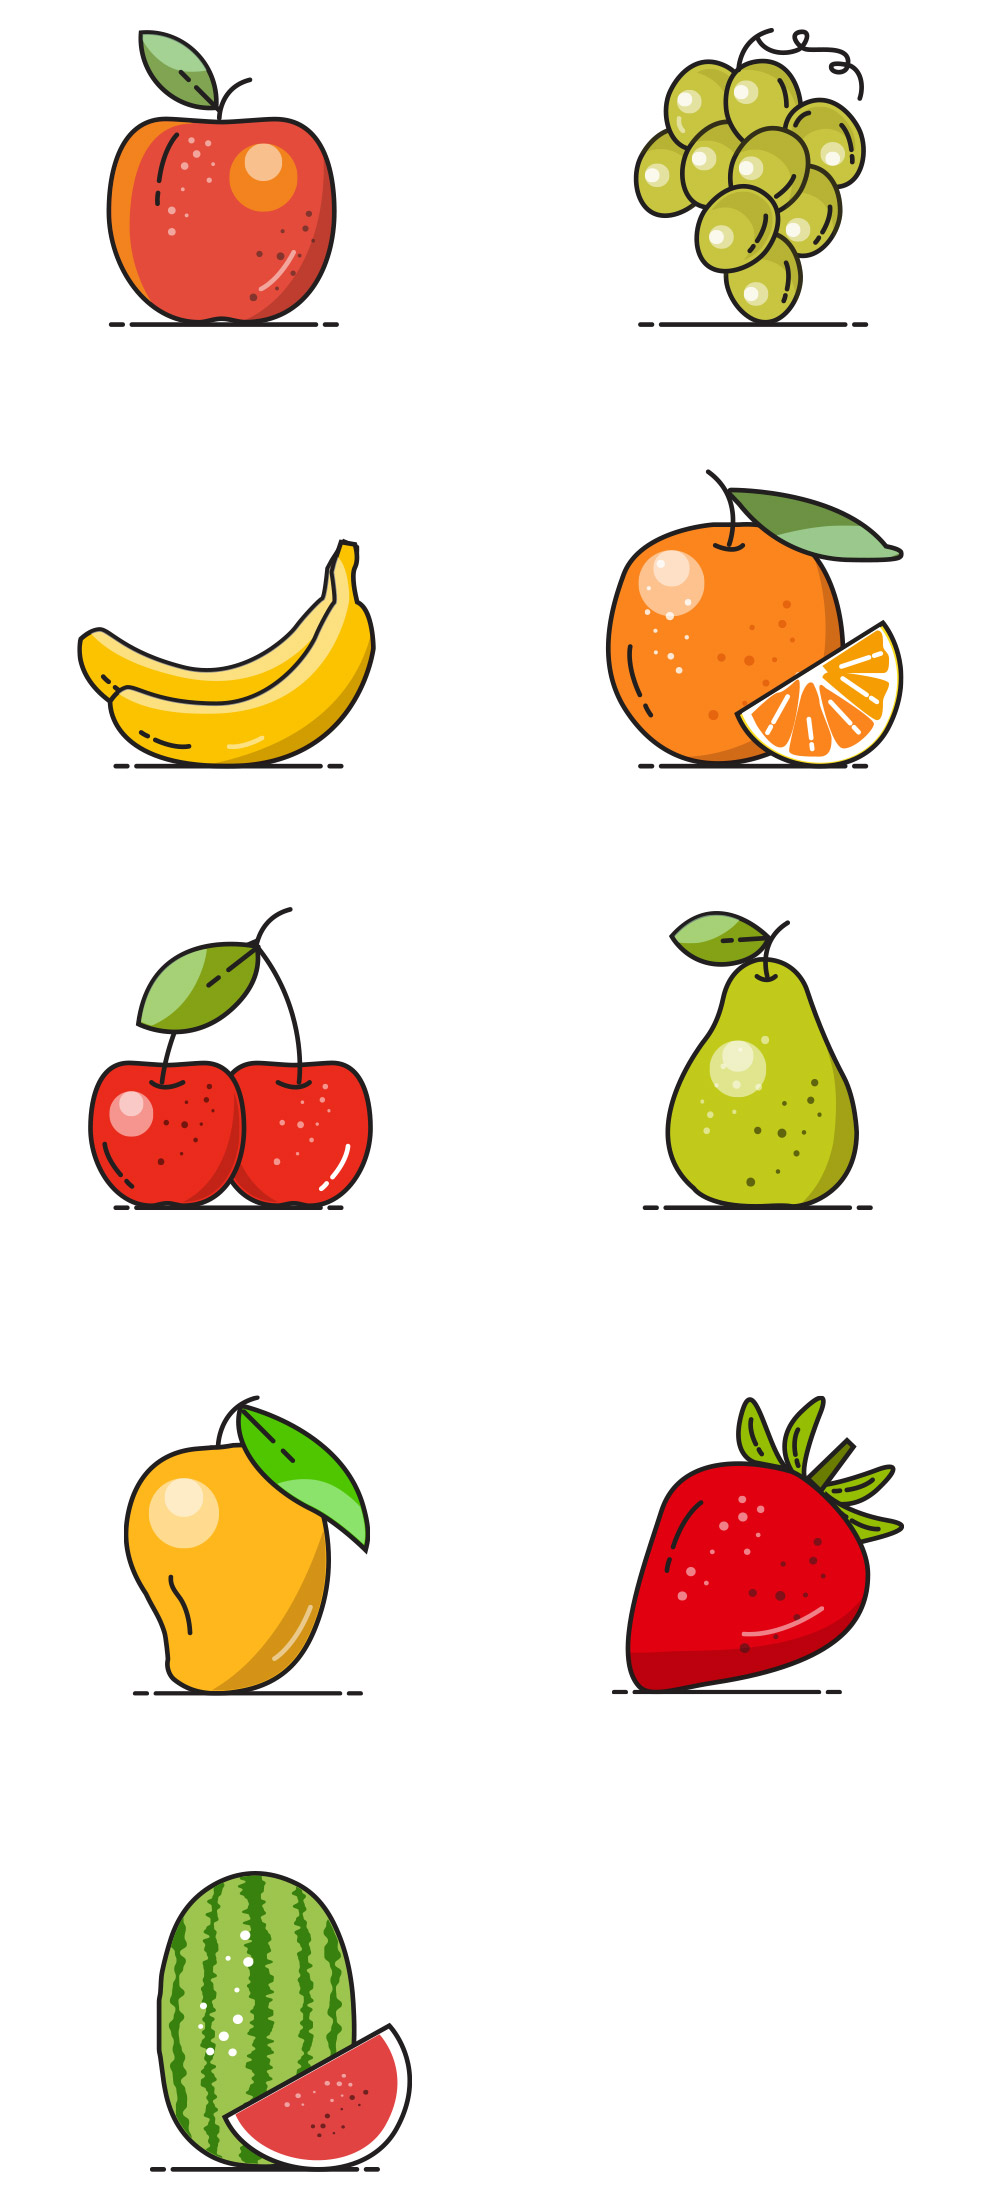 وکتور میوه های مختلف